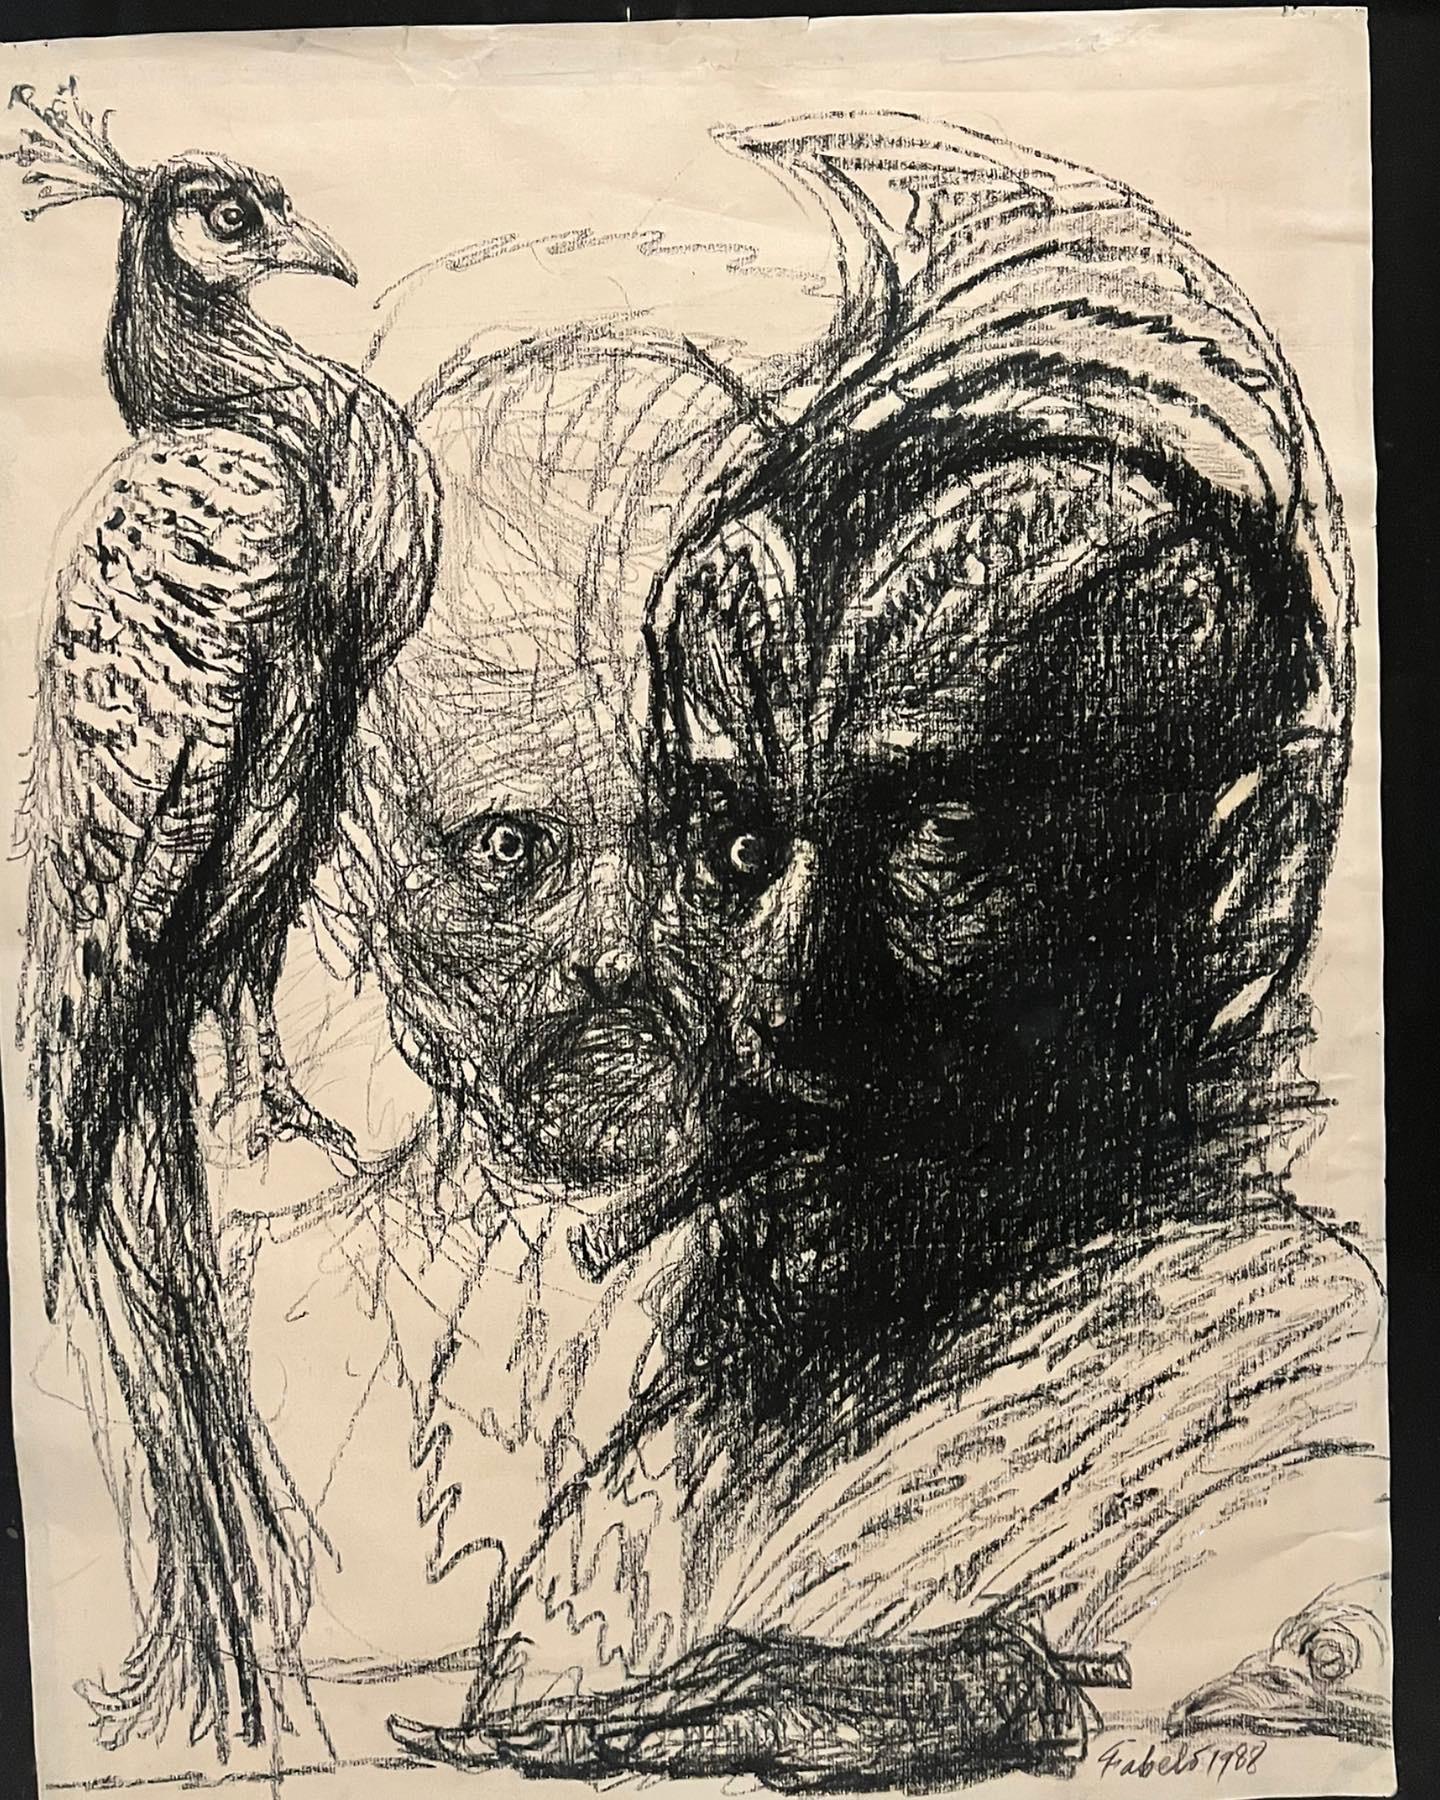 Peinture à l'encre sur papier de Roberto Fabelo en 1988. Le autoportrait de l'artiste cubain se cache derrière une créature de merman plus sombre et un oiseau. Elle est signée et datée par l'artiste. Roberto Fabelois est l'un des peintre, sculpteur